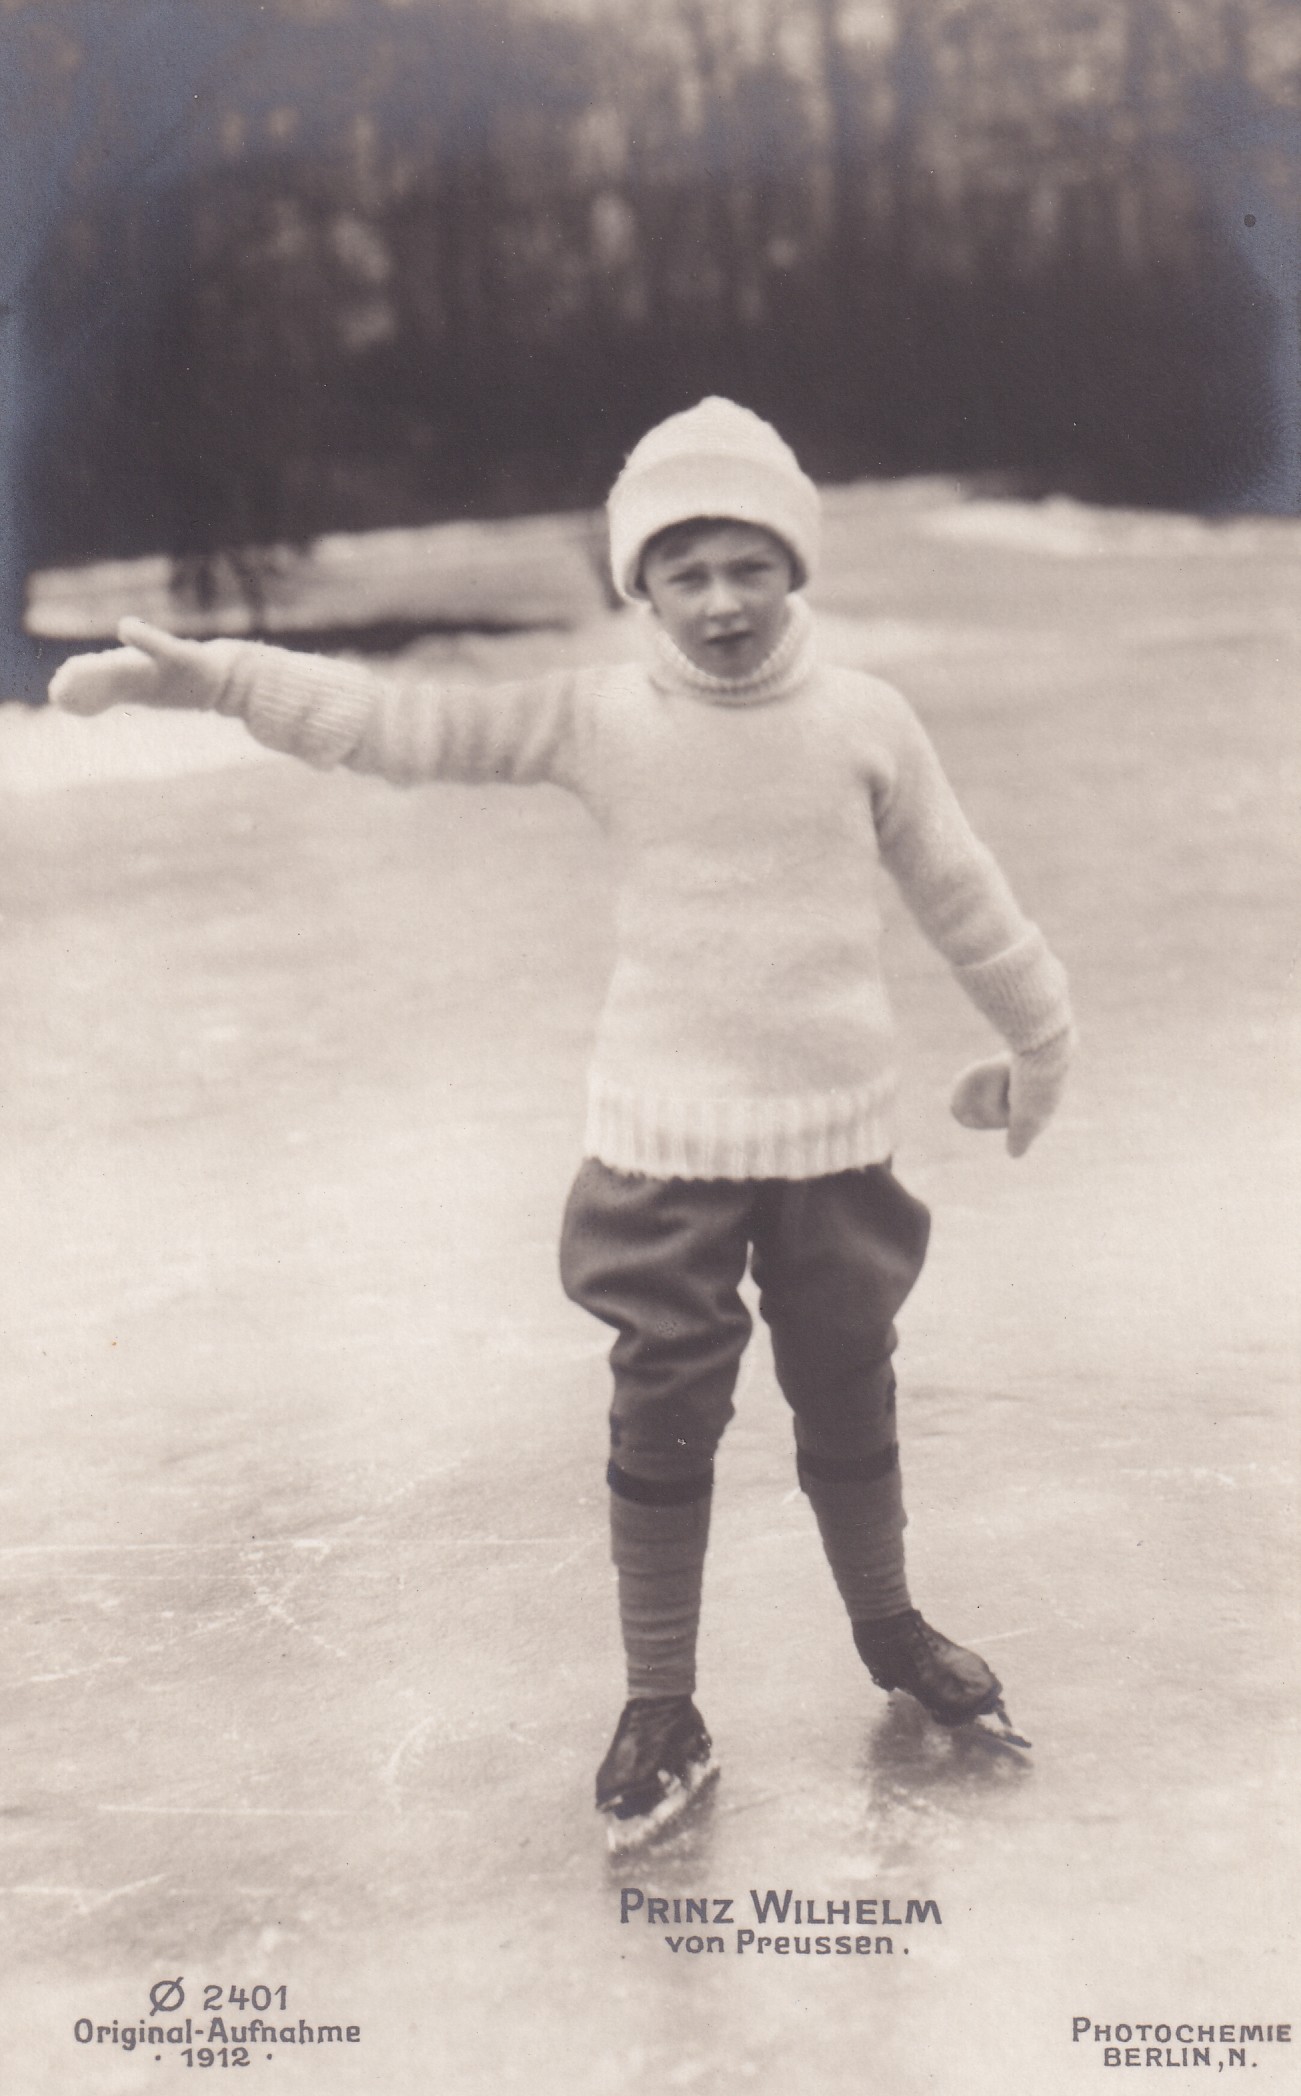 Bildpostkarte mit Foto des Prinzen Wilhelm von Preußen (1906-1940) beim Schlittschuhlaufen, 1912 (Schloß Wernigerode GmbH RR-F)